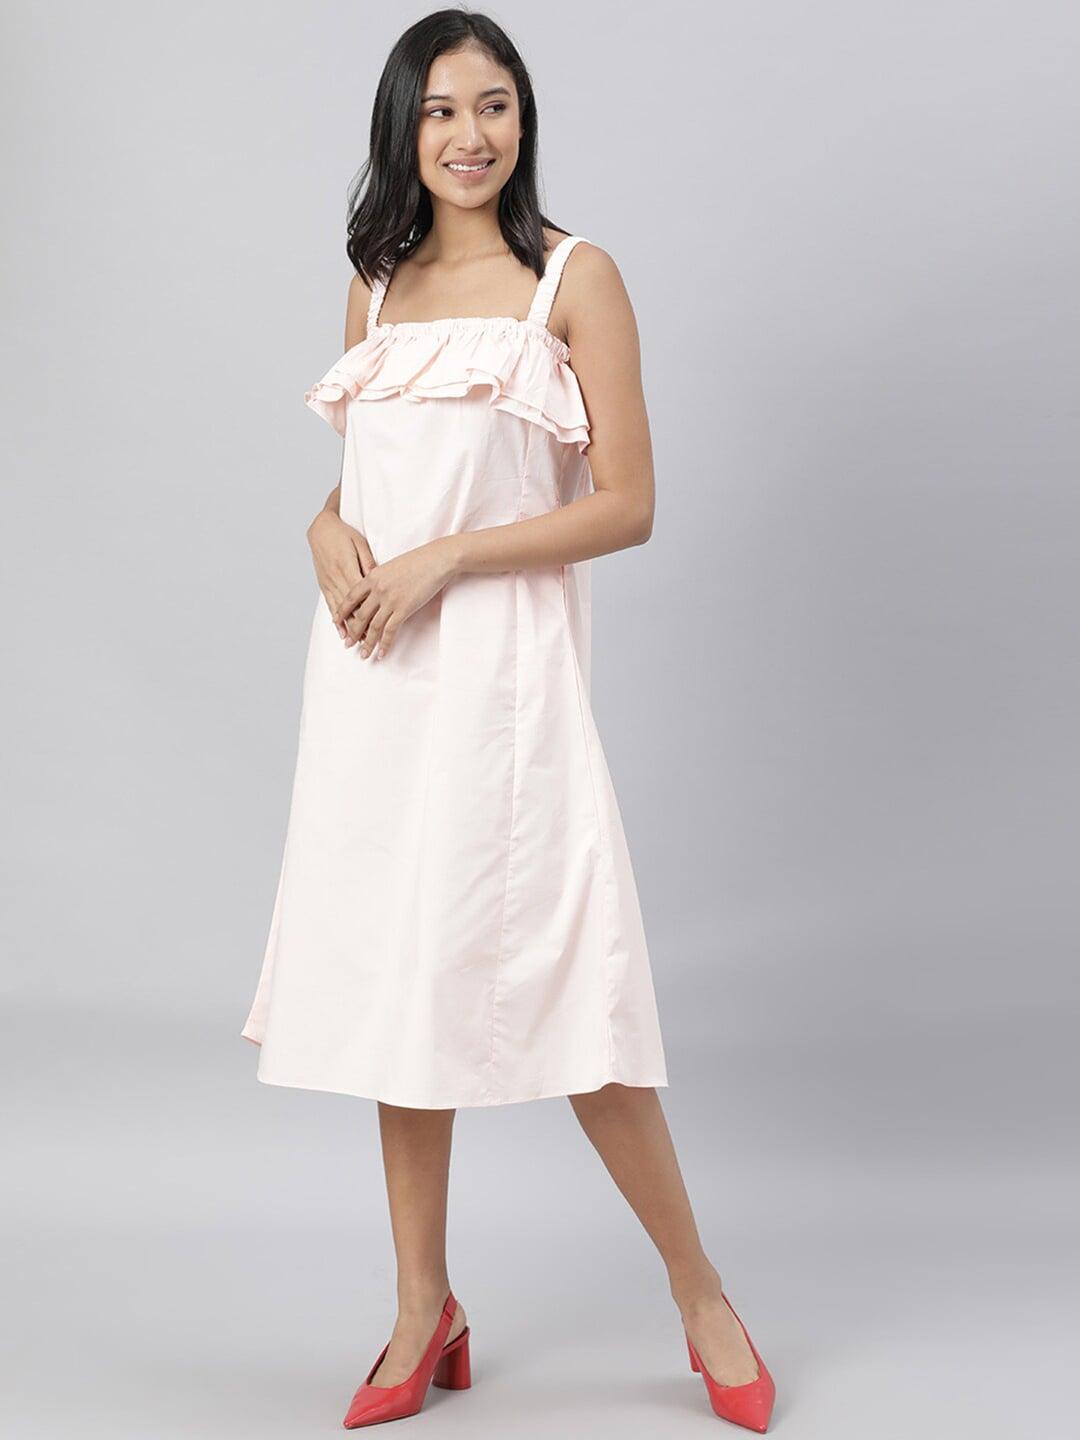 rareism-pink-solid-a-line-sleeveless-dress